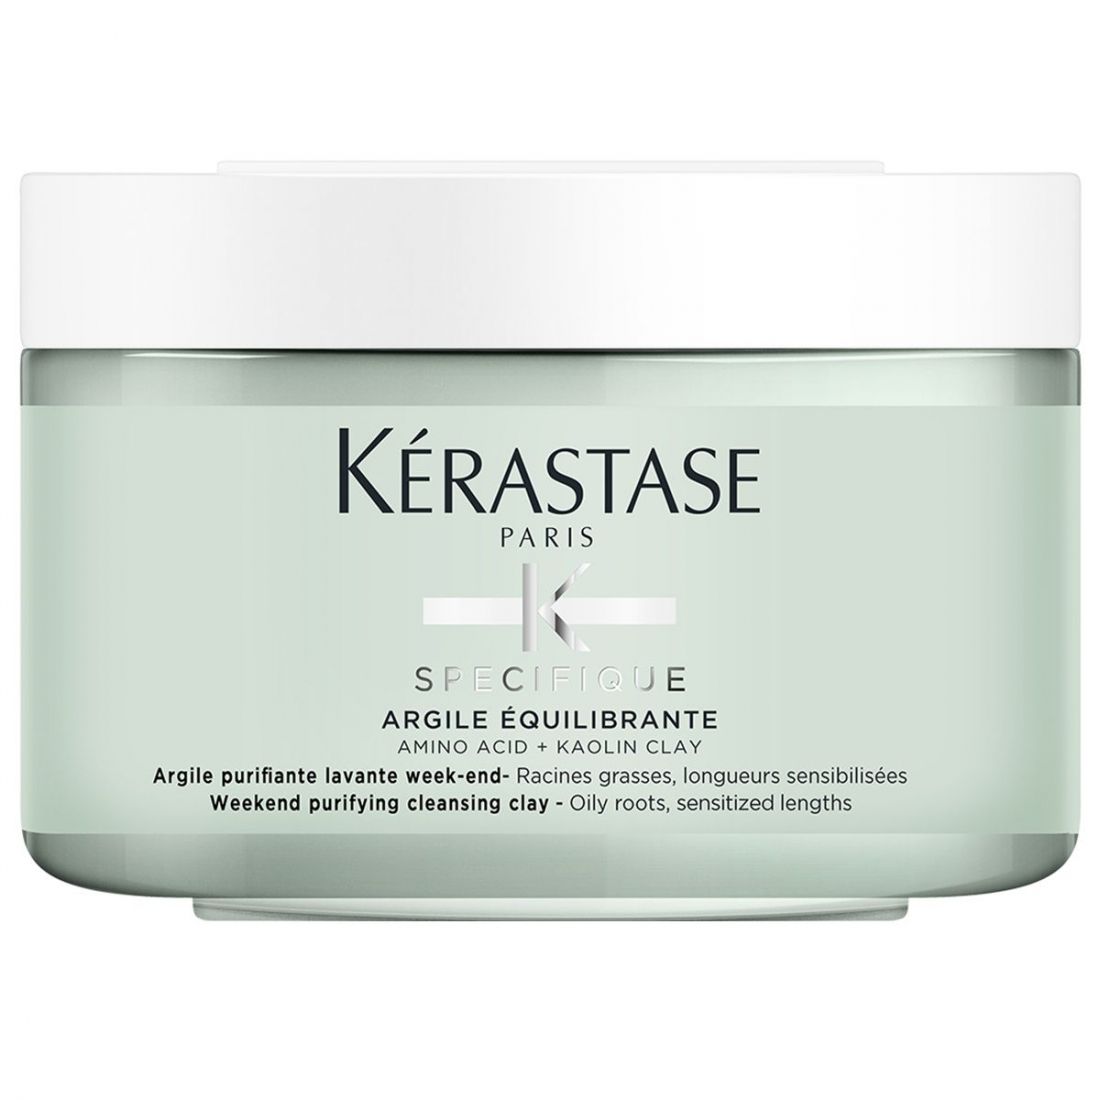 Kérastase - Argile pour cheveux 'Spécifique Argile Equilibrante' - 250 ml